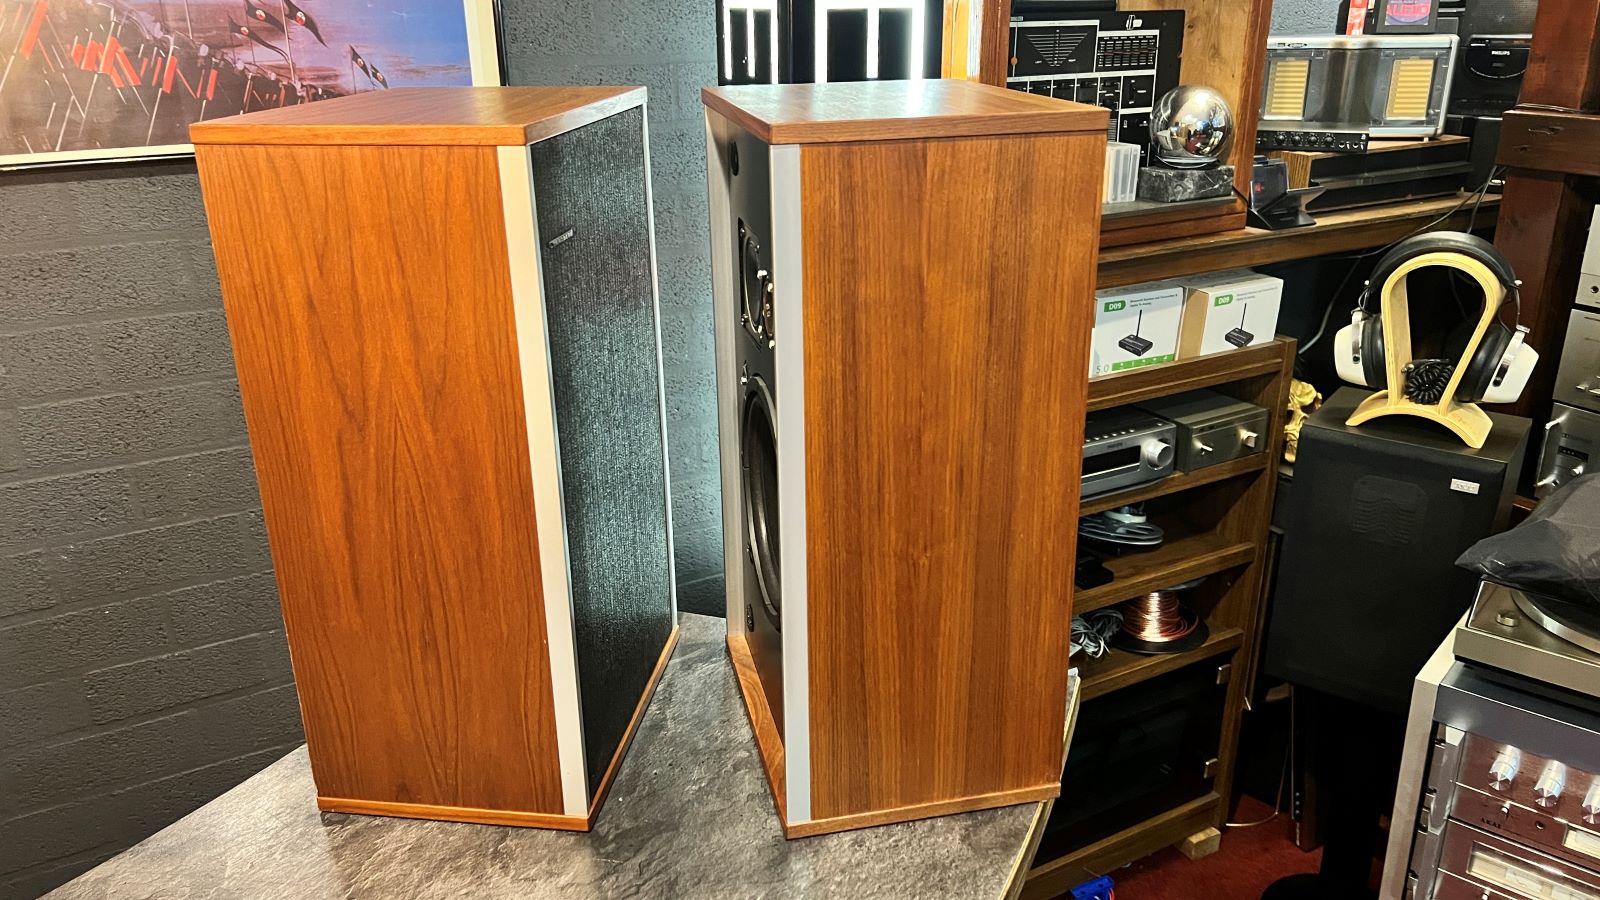 Vintage Tandberg TL-2520 speakers 